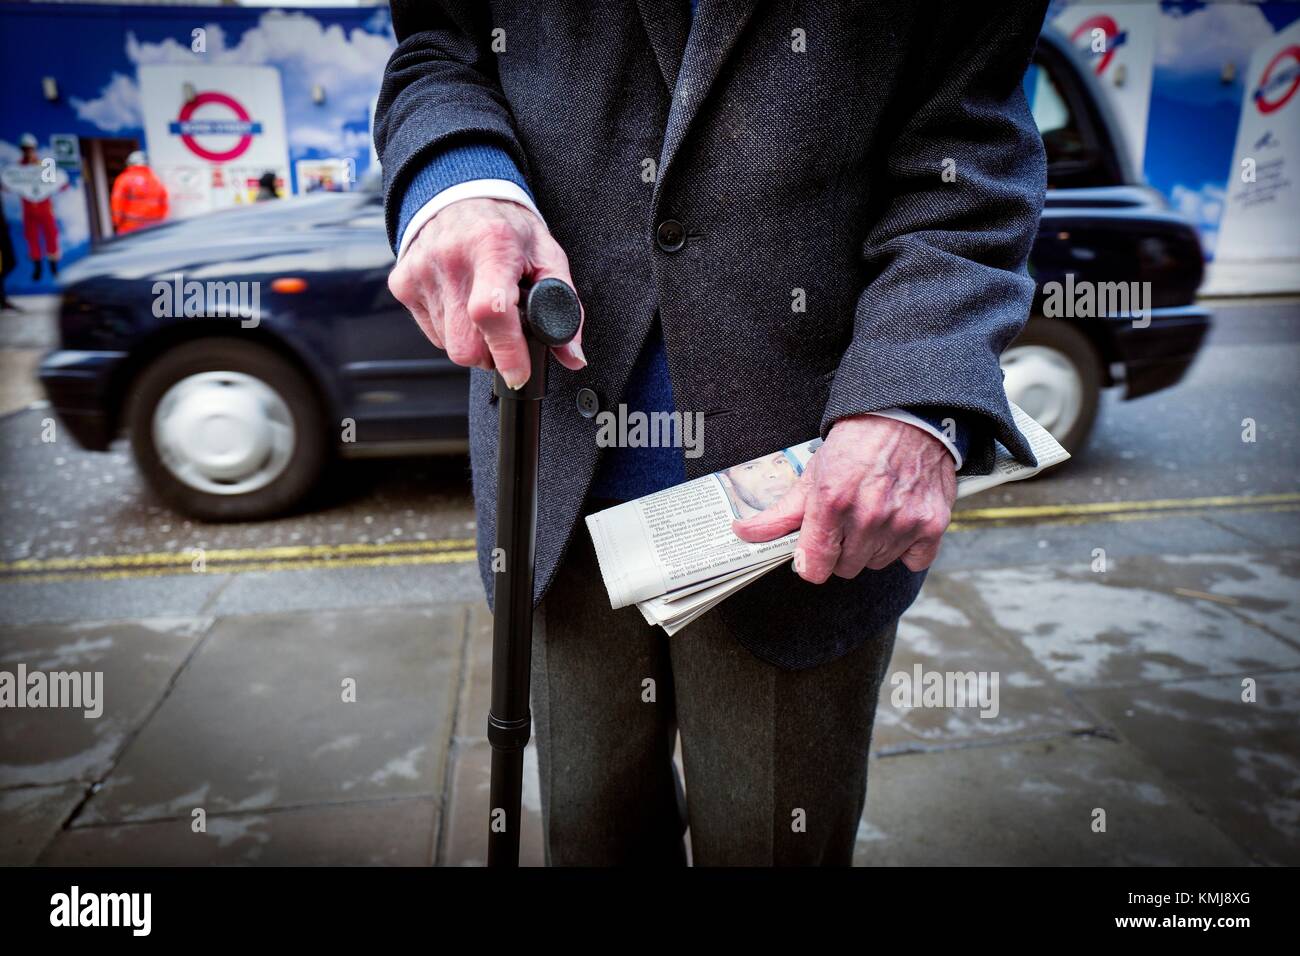 Plano de imprimación de un hombre alcalde irreconocible con un baston en una mano y un periódico en la otra, al fondo un taxi. Oxford Street, Londres, Reino Unido, Europa. Foto de stock